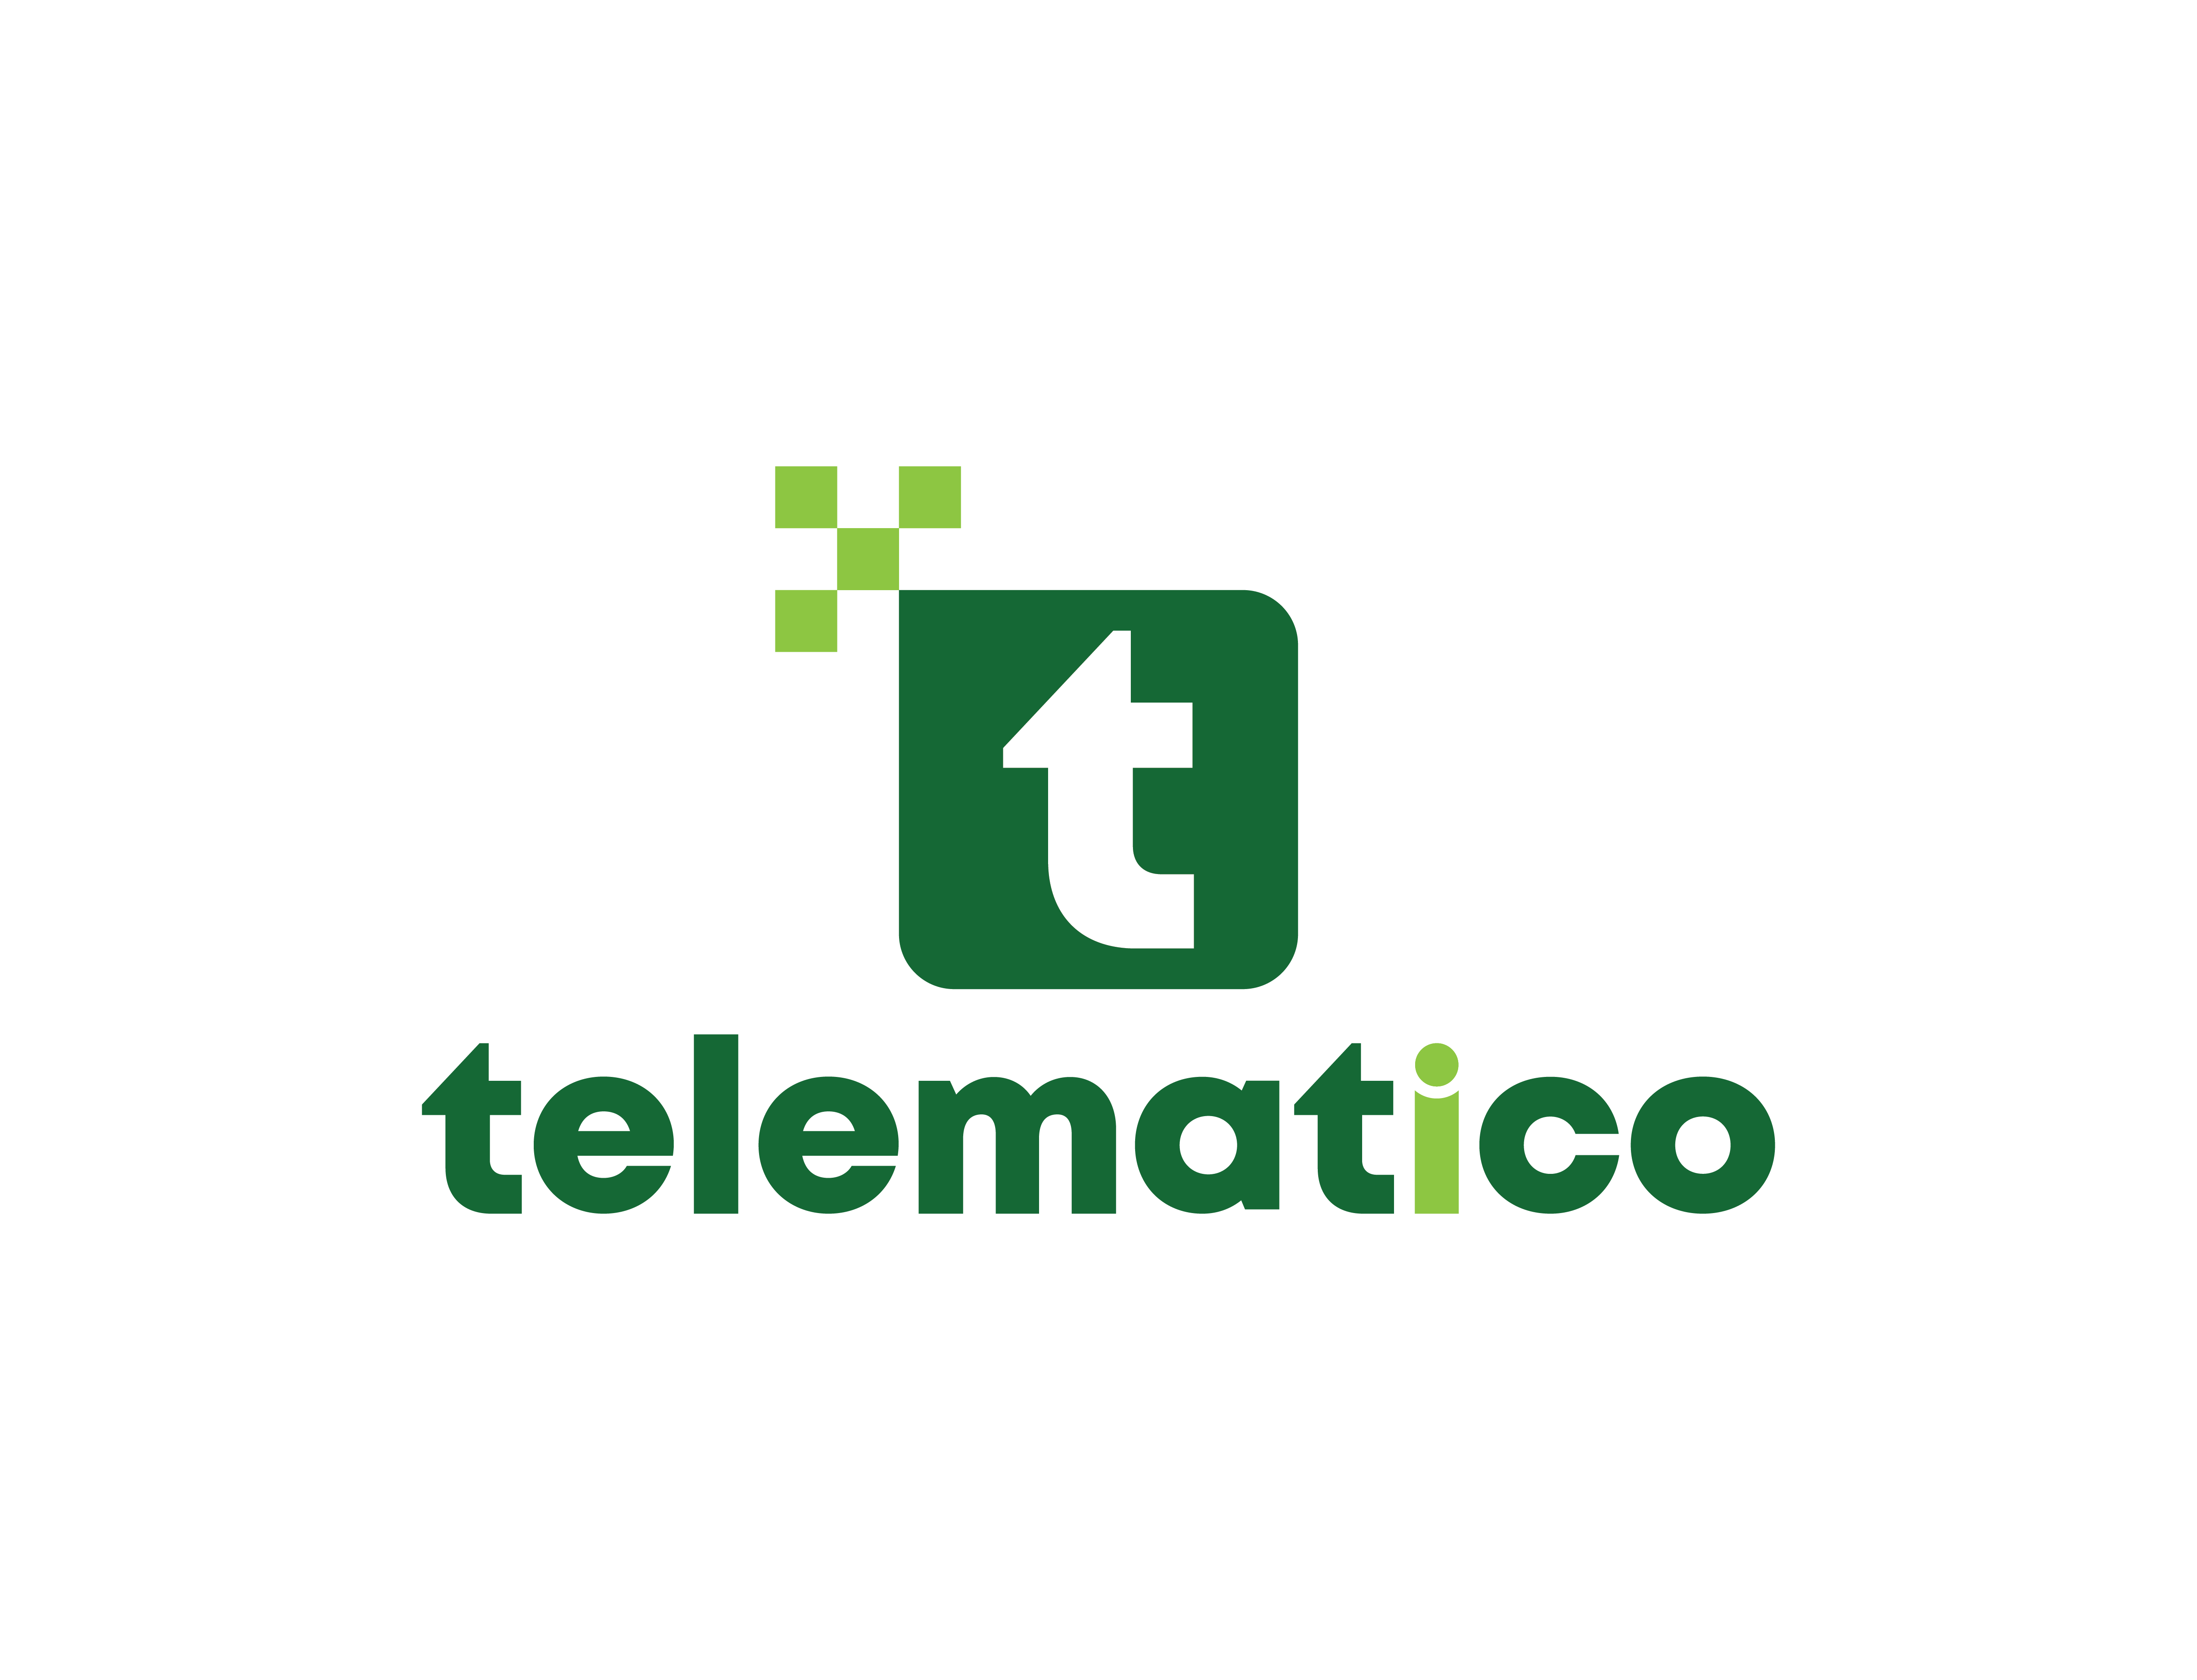 Telematico Corporation